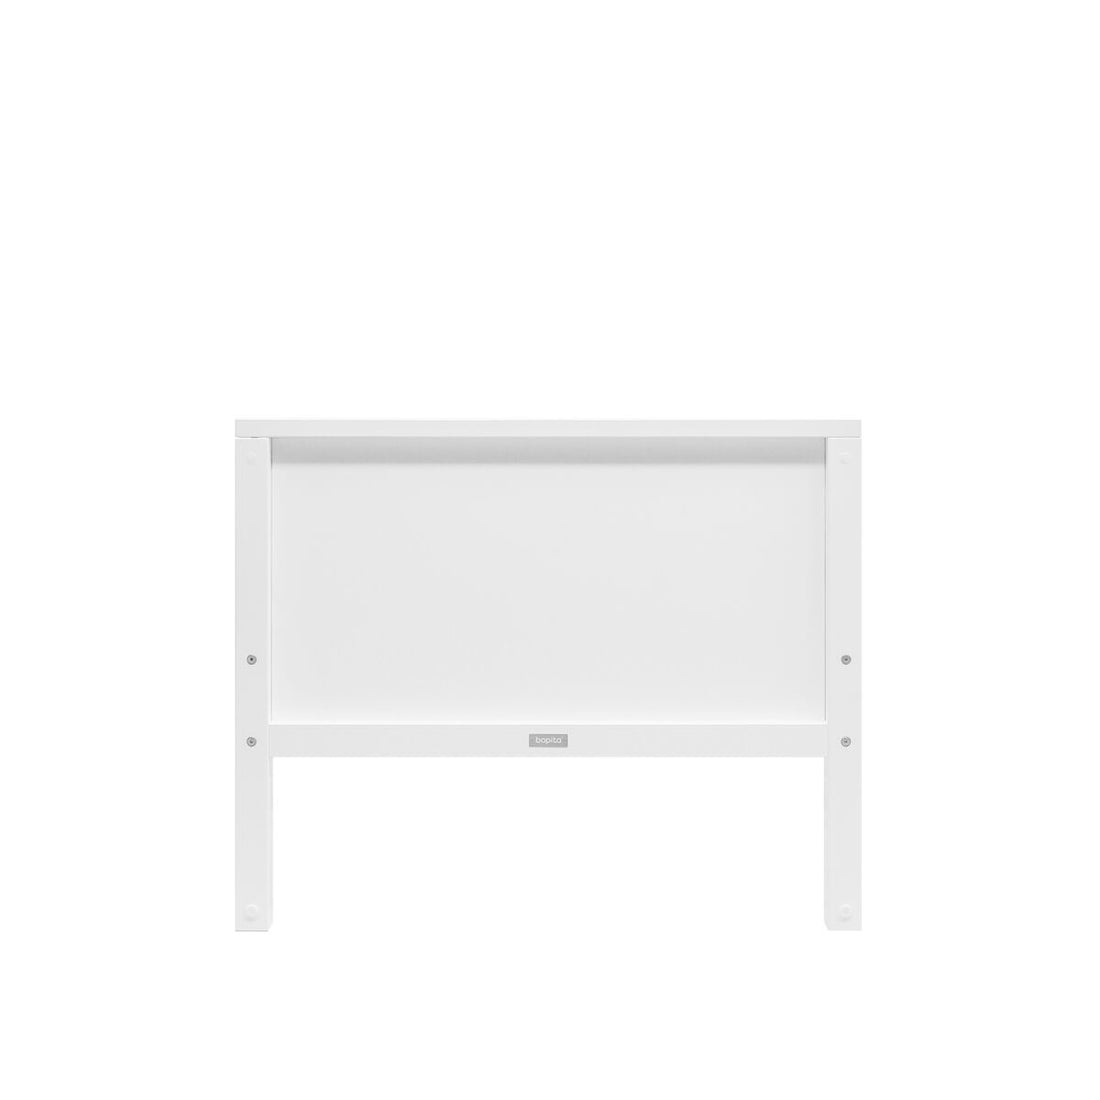 bopita-bench-bed-90x200-nordic-white-bopt-52013911- (4)